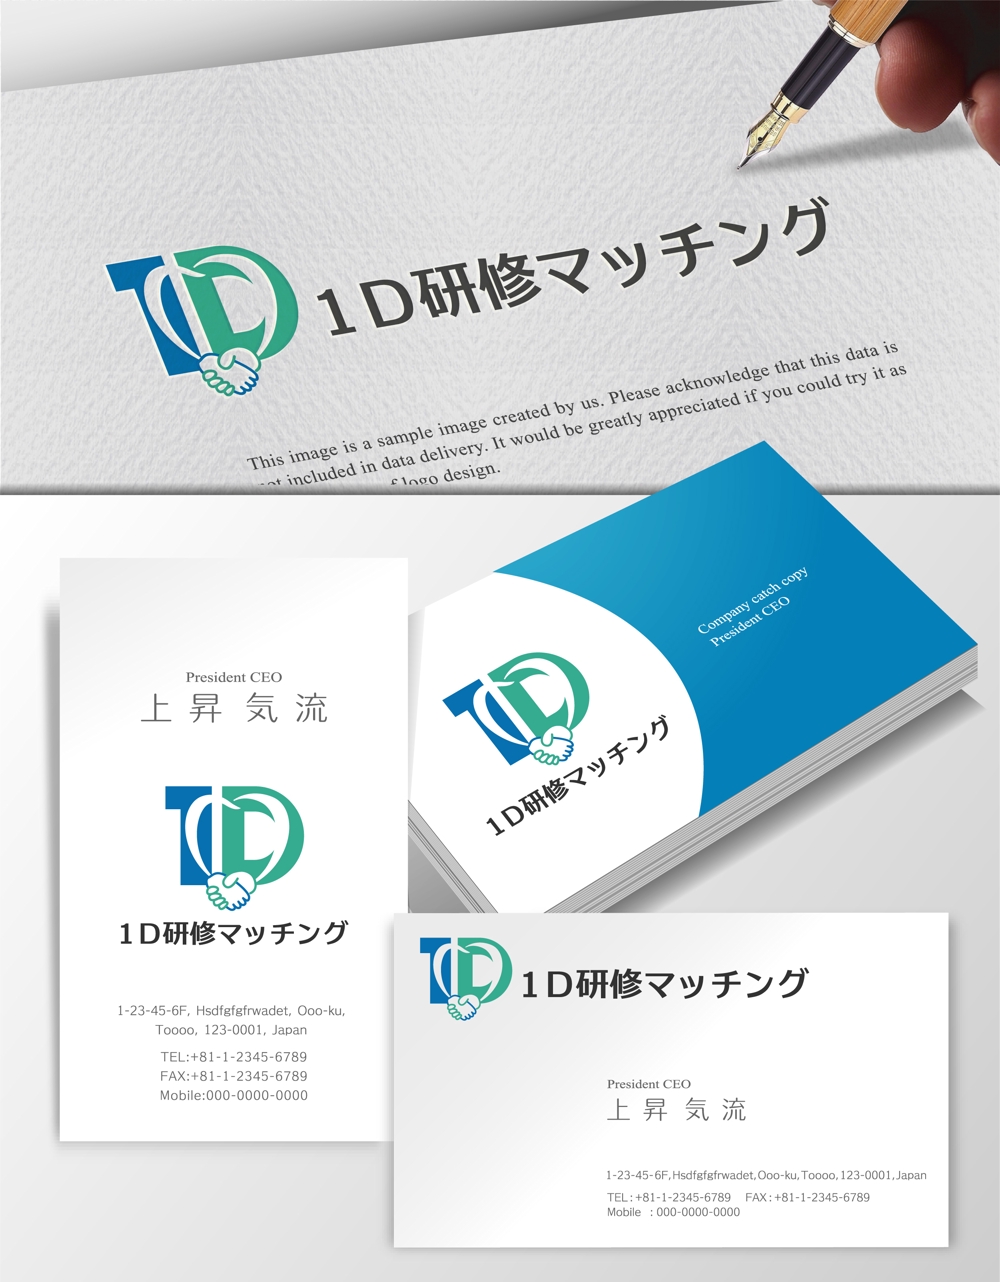 研修医マッチングサイト「1D研修マッチング」のロゴ